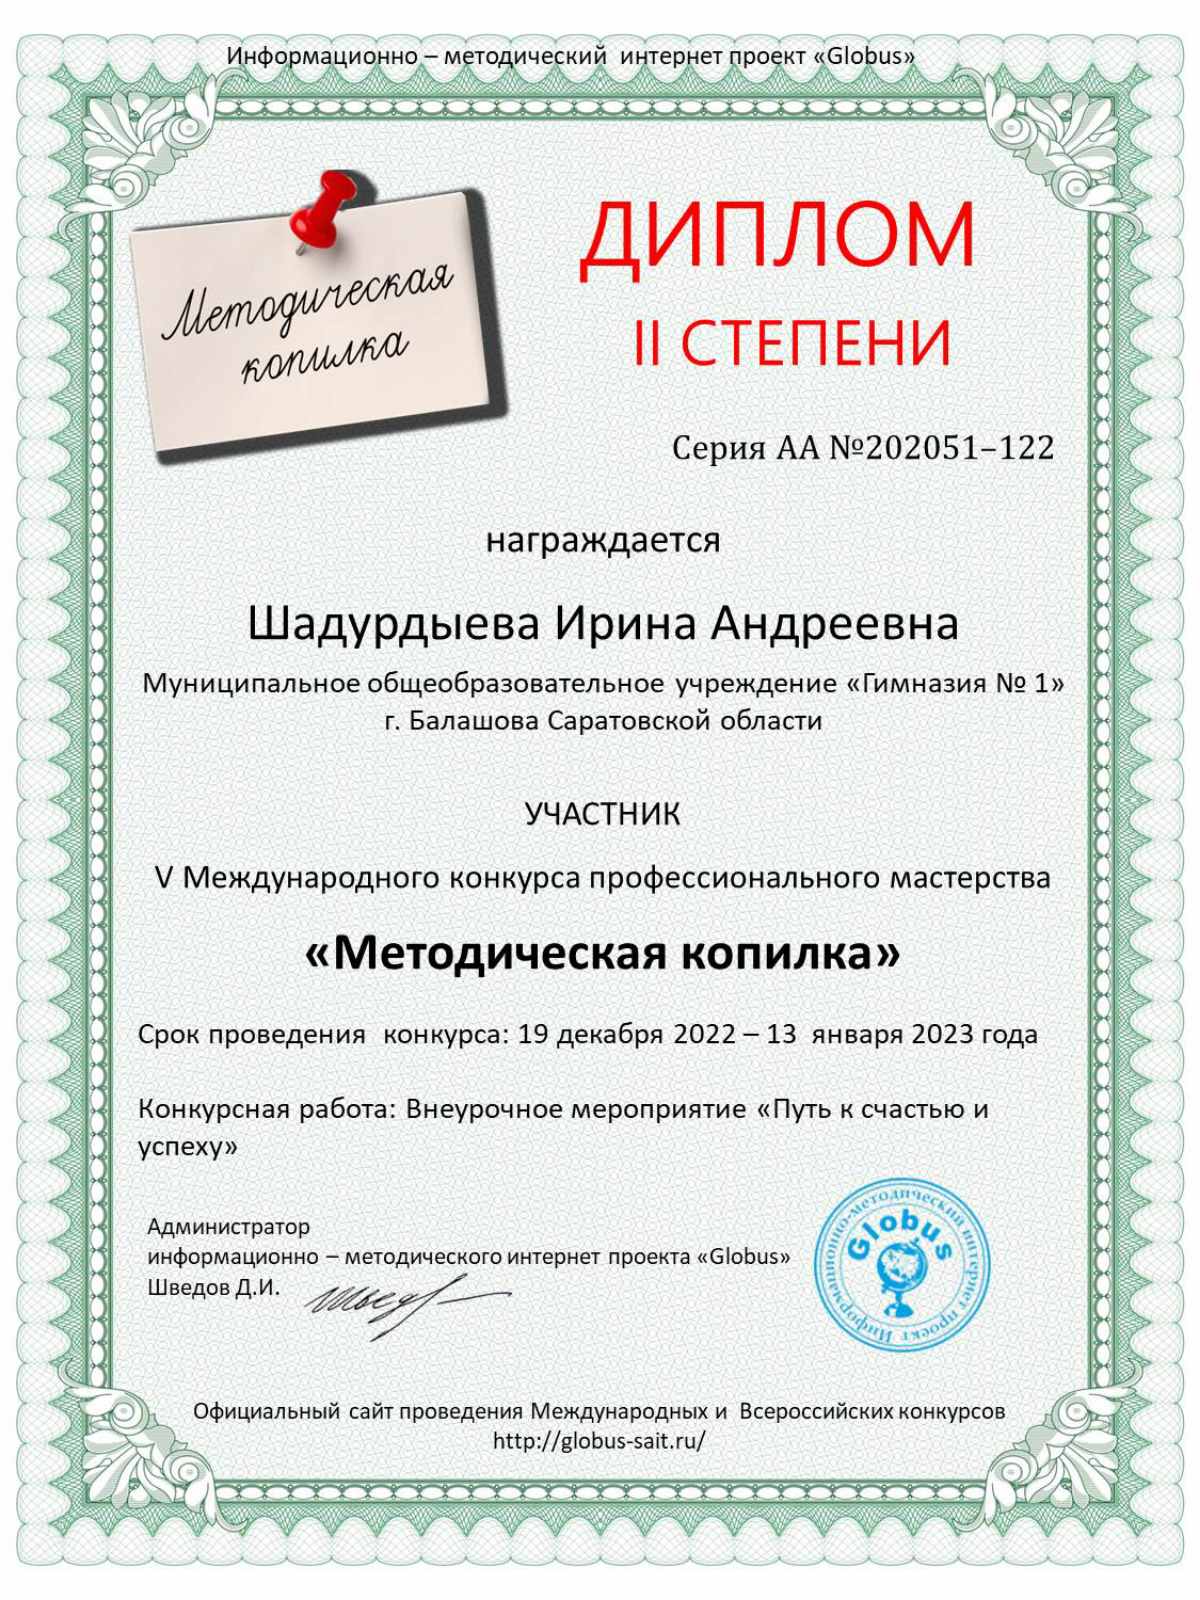 Поздравляем Шадурдыеву И.А. с победой в конкурсах профессионального мастерства!